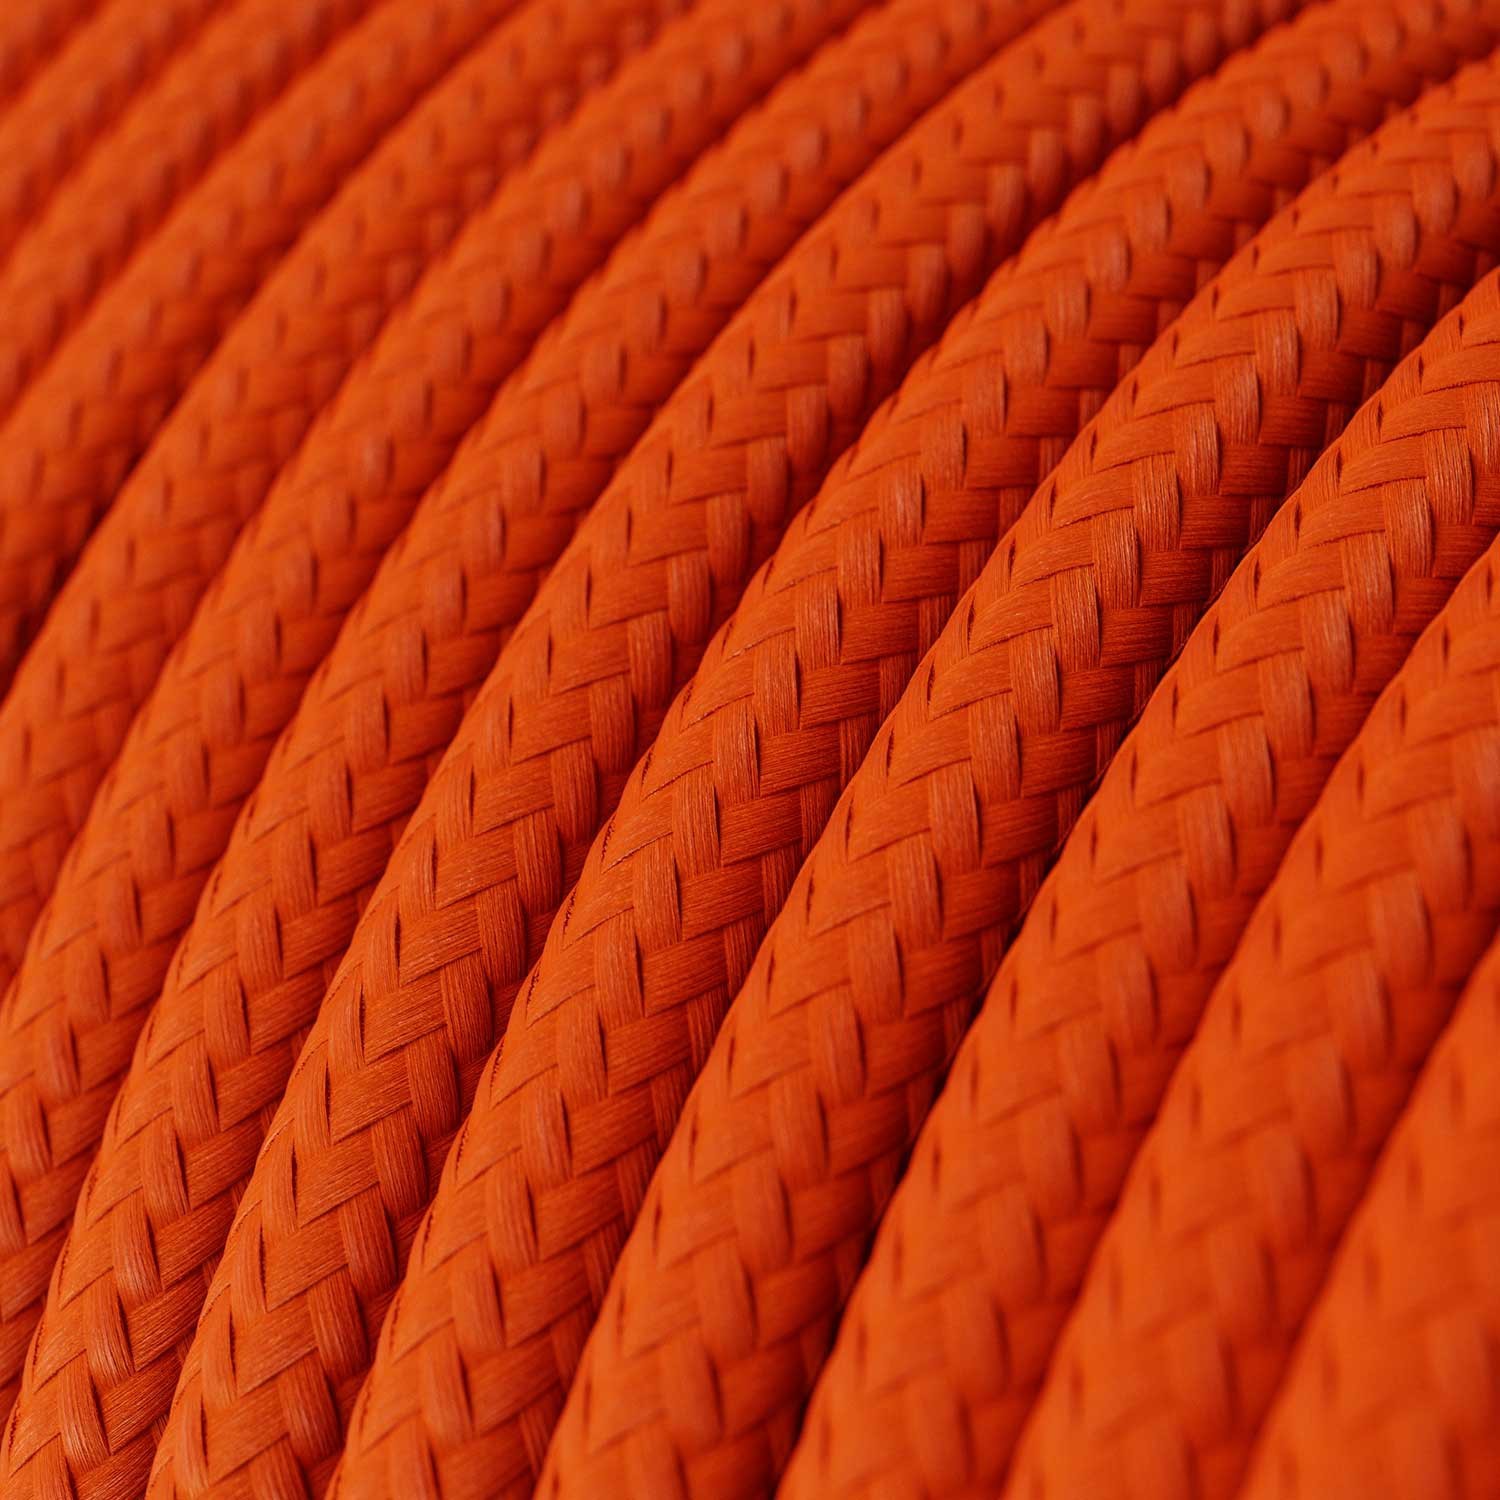 Cavo Elettrico rotondo rivestito in tessuto effetto Seta Tinta Unita Arancione RM15